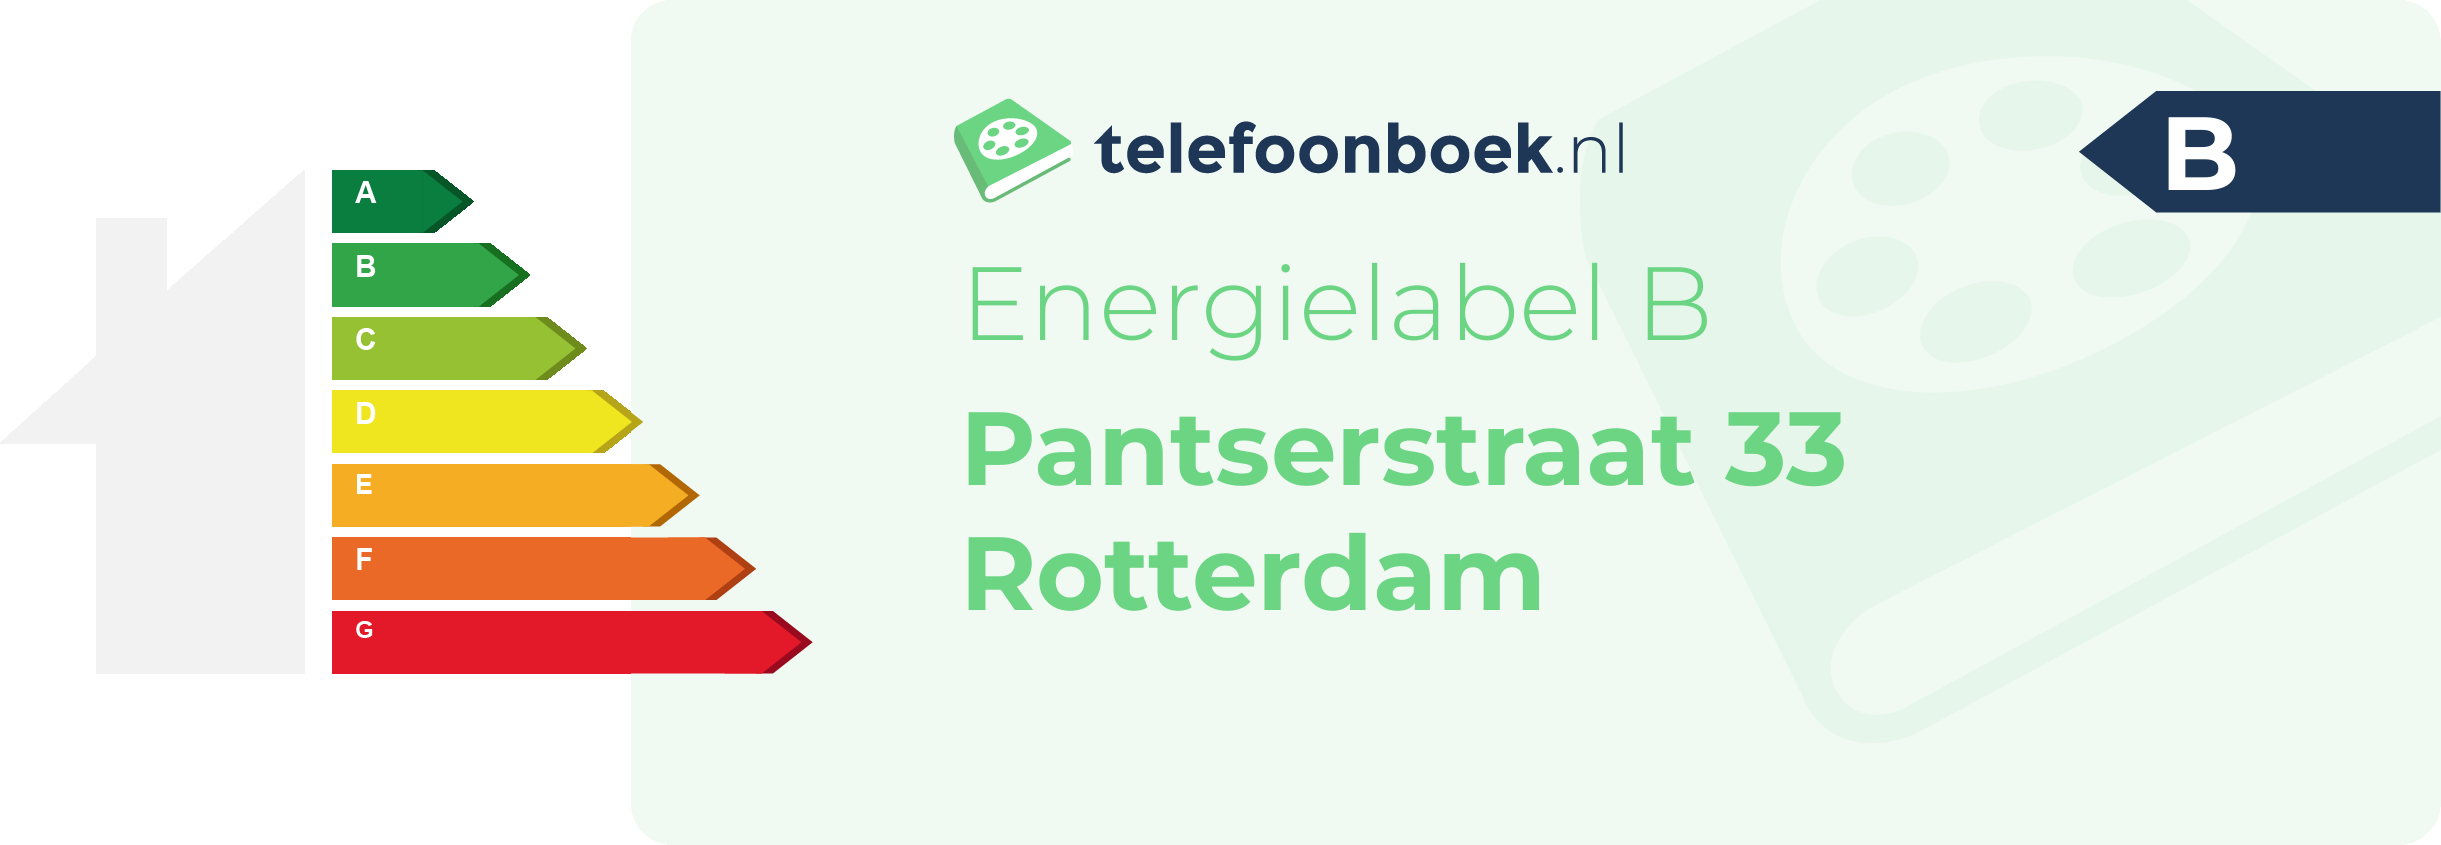 Energielabel Pantserstraat 33 Rotterdam